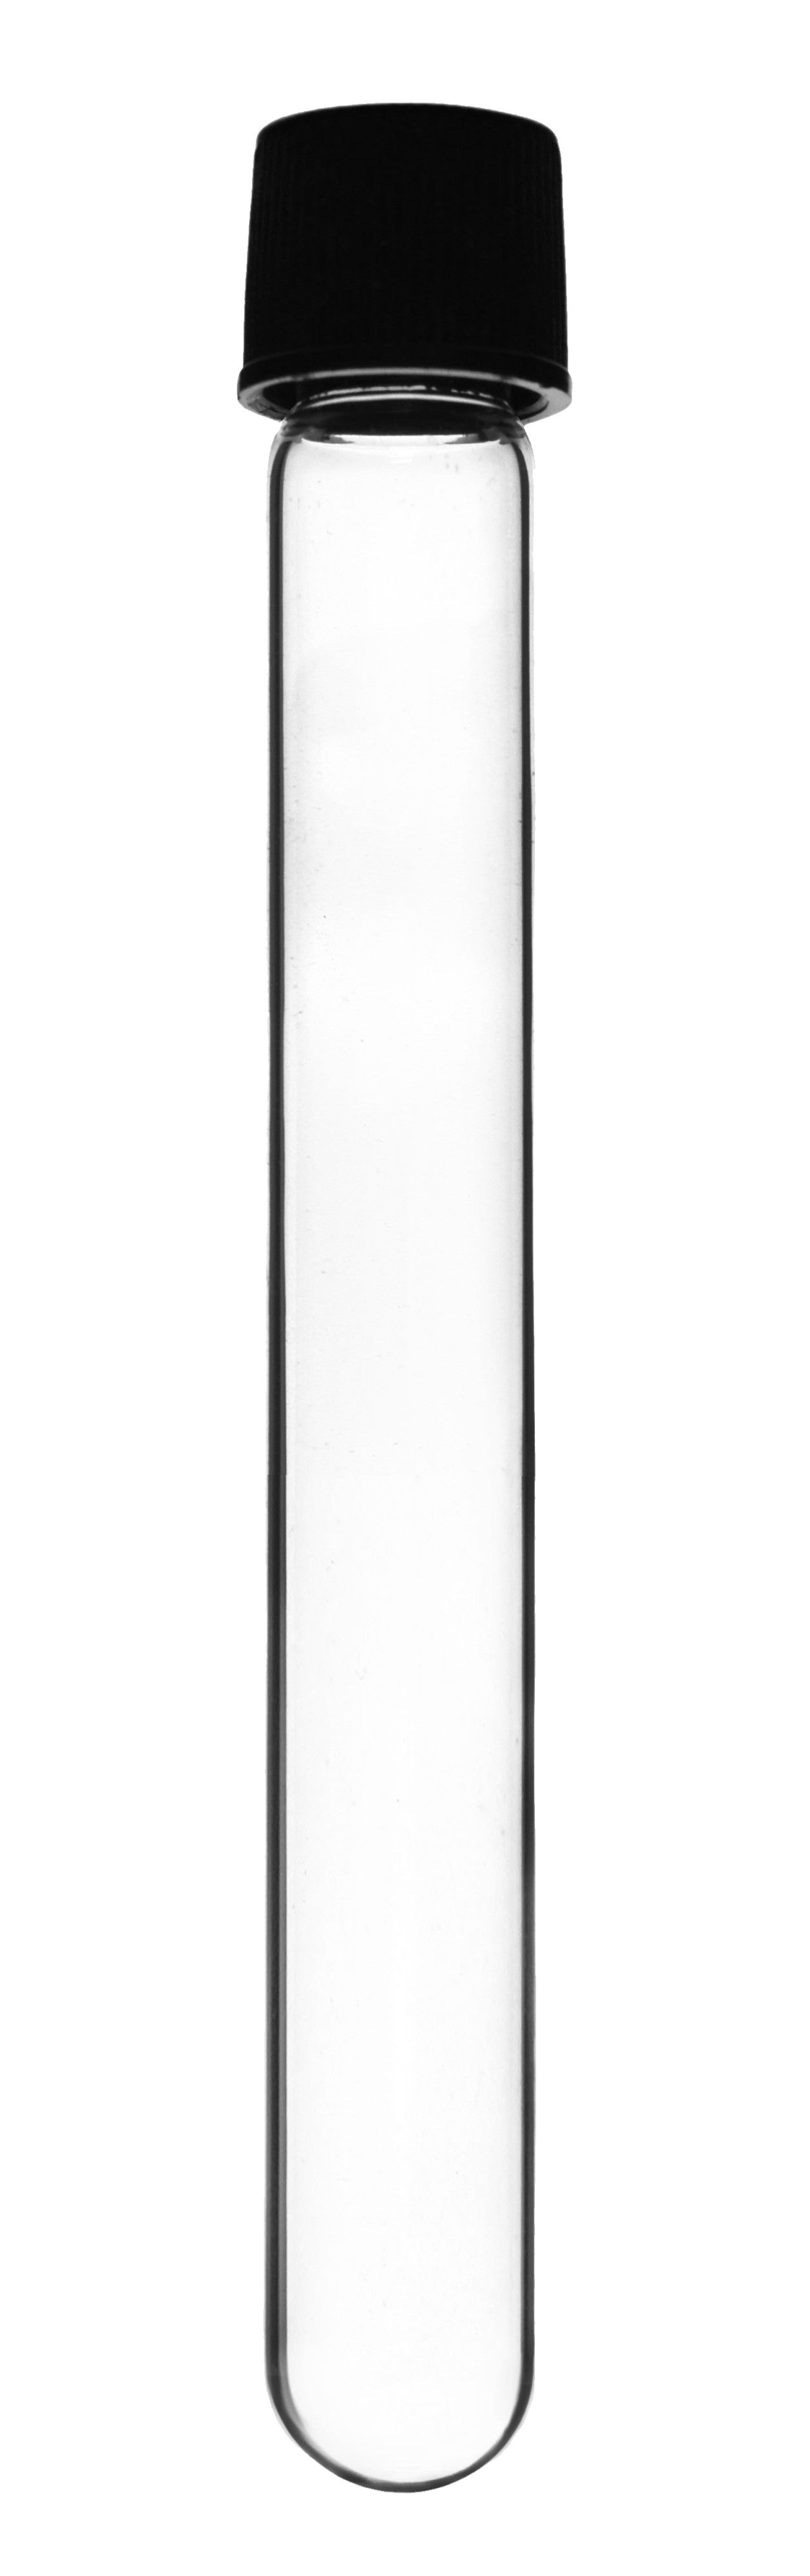 Borosilicate Glass Test Tubes, 15 ml, Round Bottom with Screw Cap